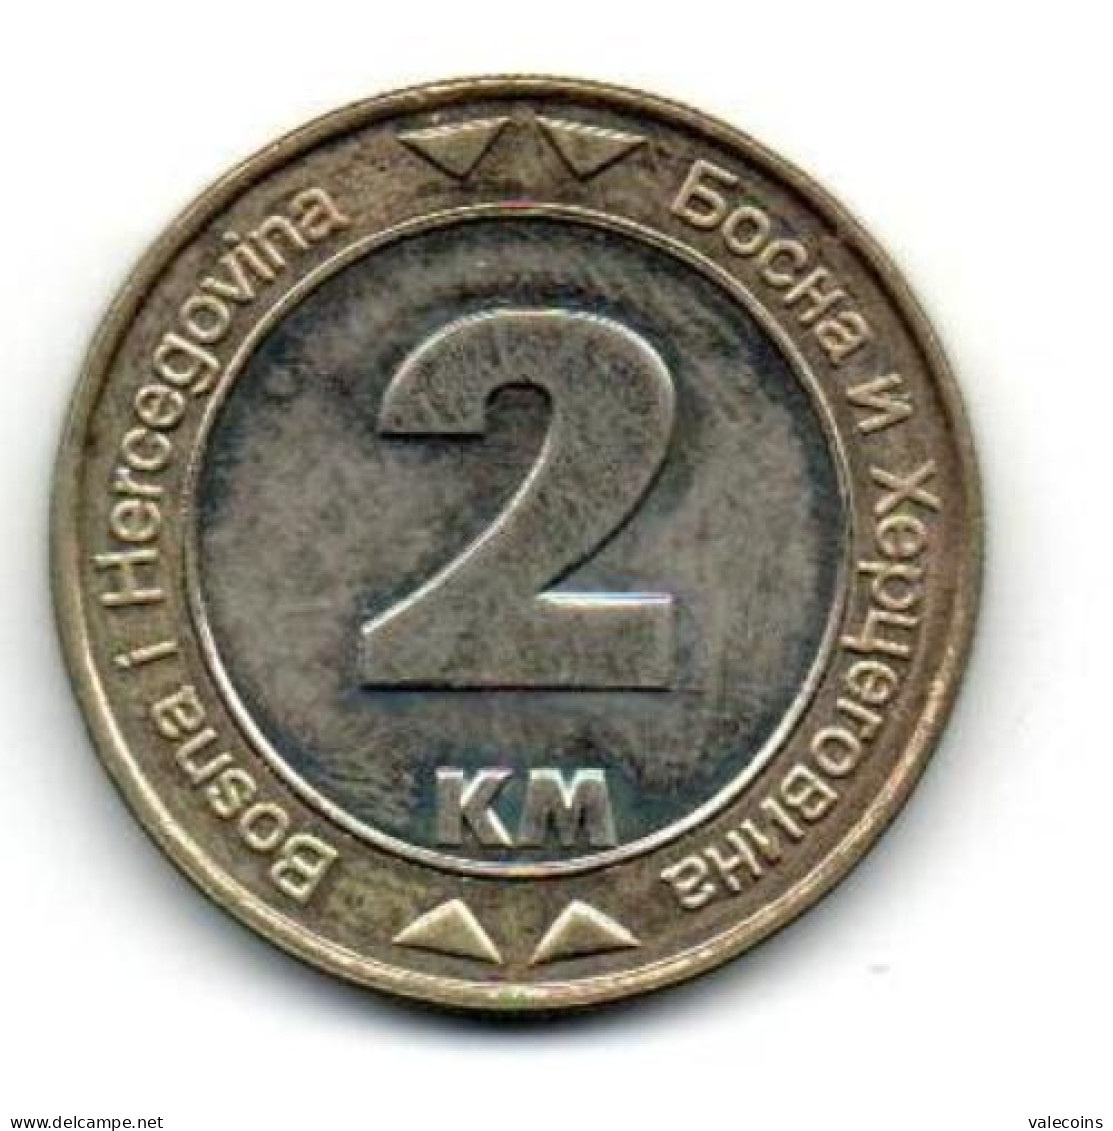 BOSNIA HERZEGOVINA - 2008 - 2 Marka - KM 119 AUNC Coin - Bosnien-Herzegowina